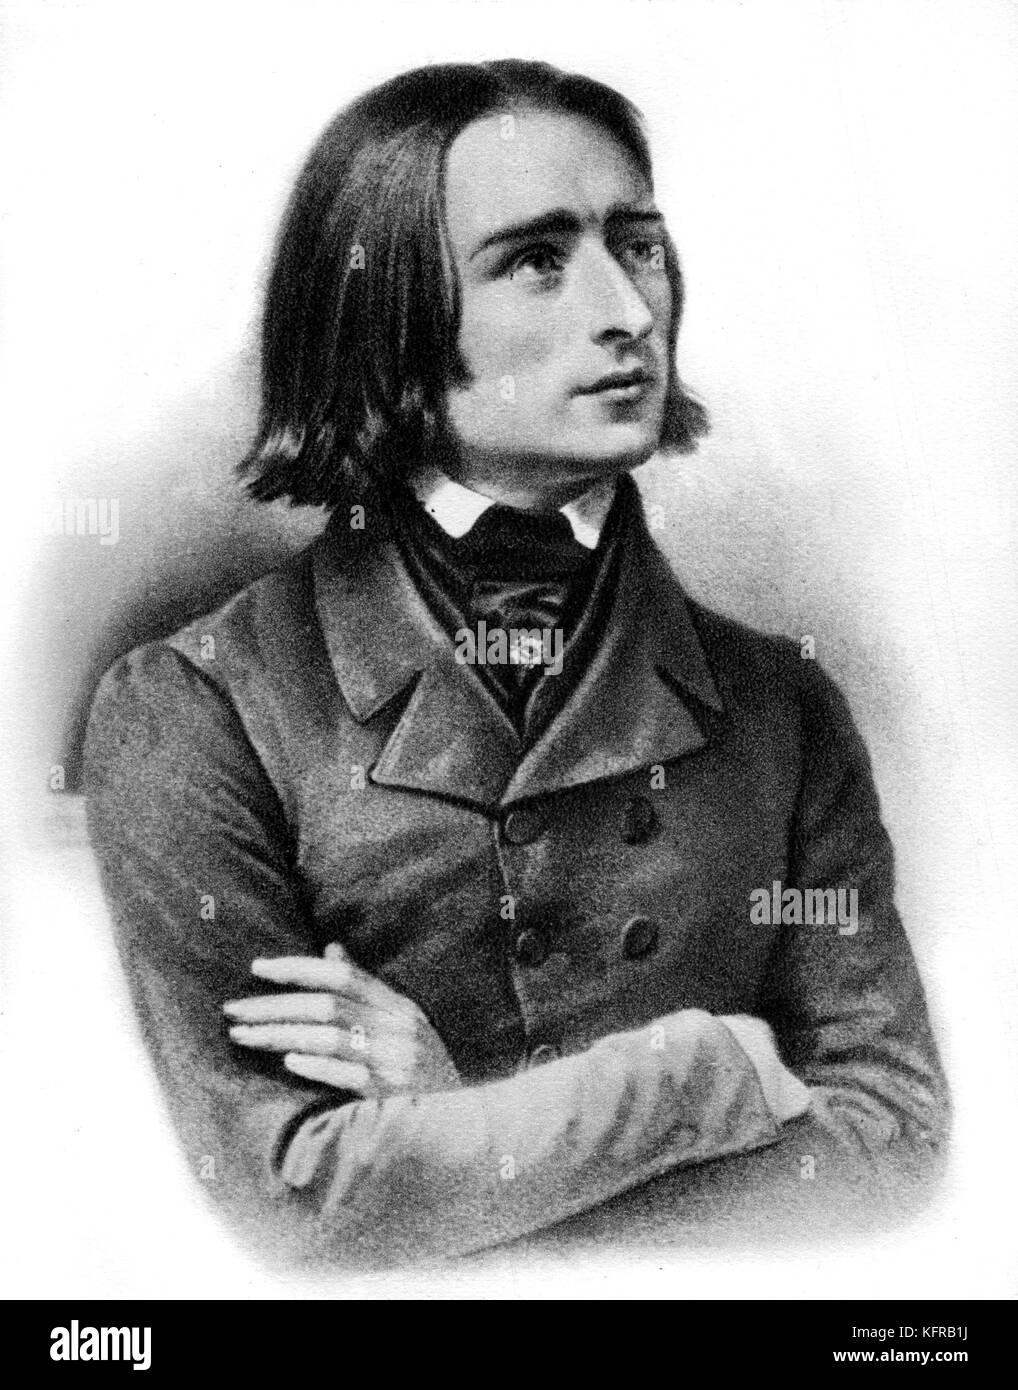 Franz Liszt - portrait, mars 1842. Après gravure de Mittag. Compositeur et pianiste hongrois, 22 octobre 1811 - 31 juillet 1886. Banque D'Images